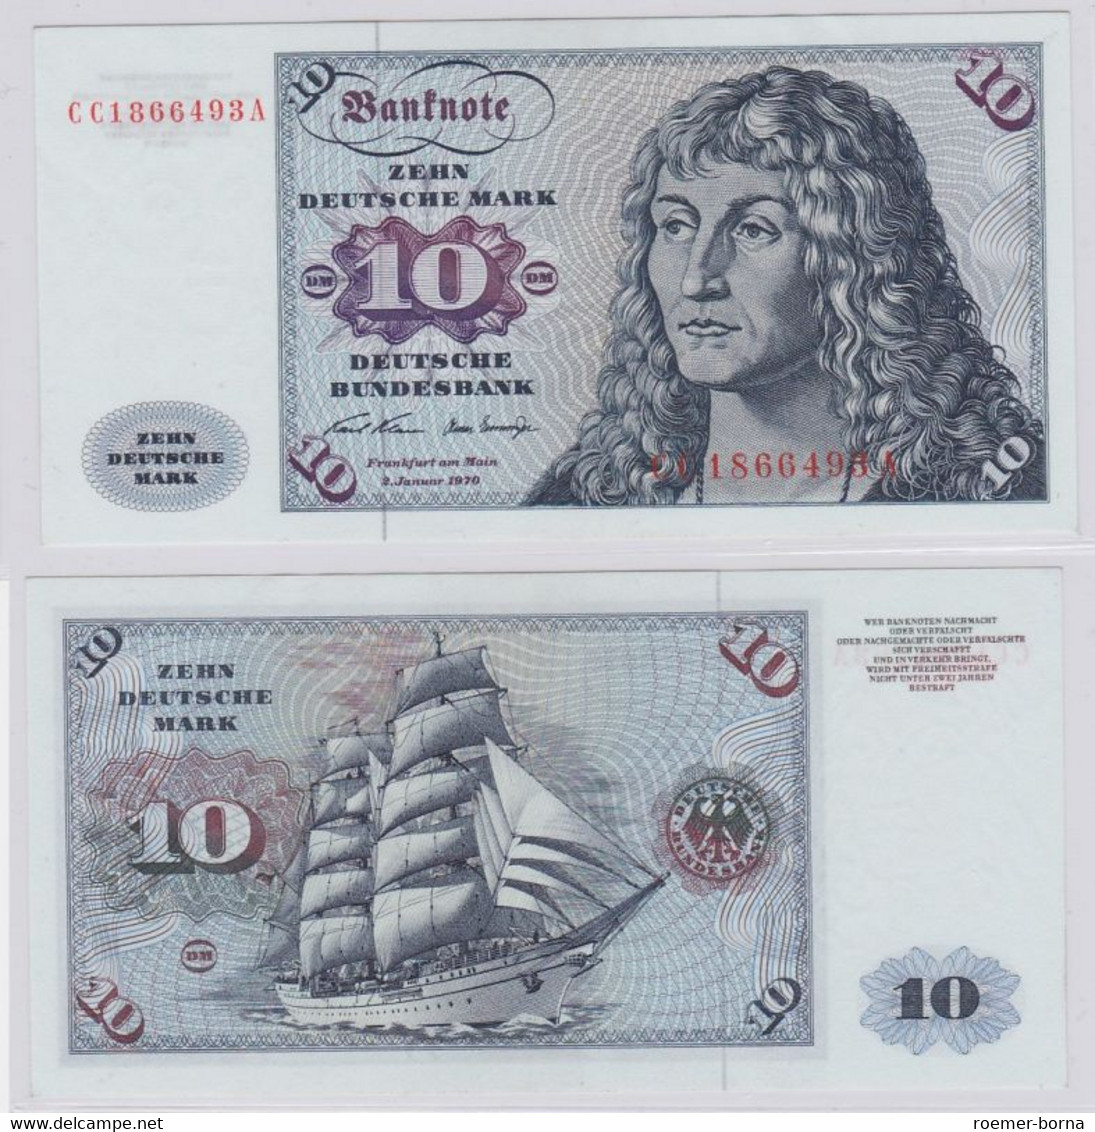 T146484 Banknote 10 DM Deutsche Mark Ro. 270a Schein 2.Jan. 1970 KN CC 1866493 A - 10 Deutsche Mark